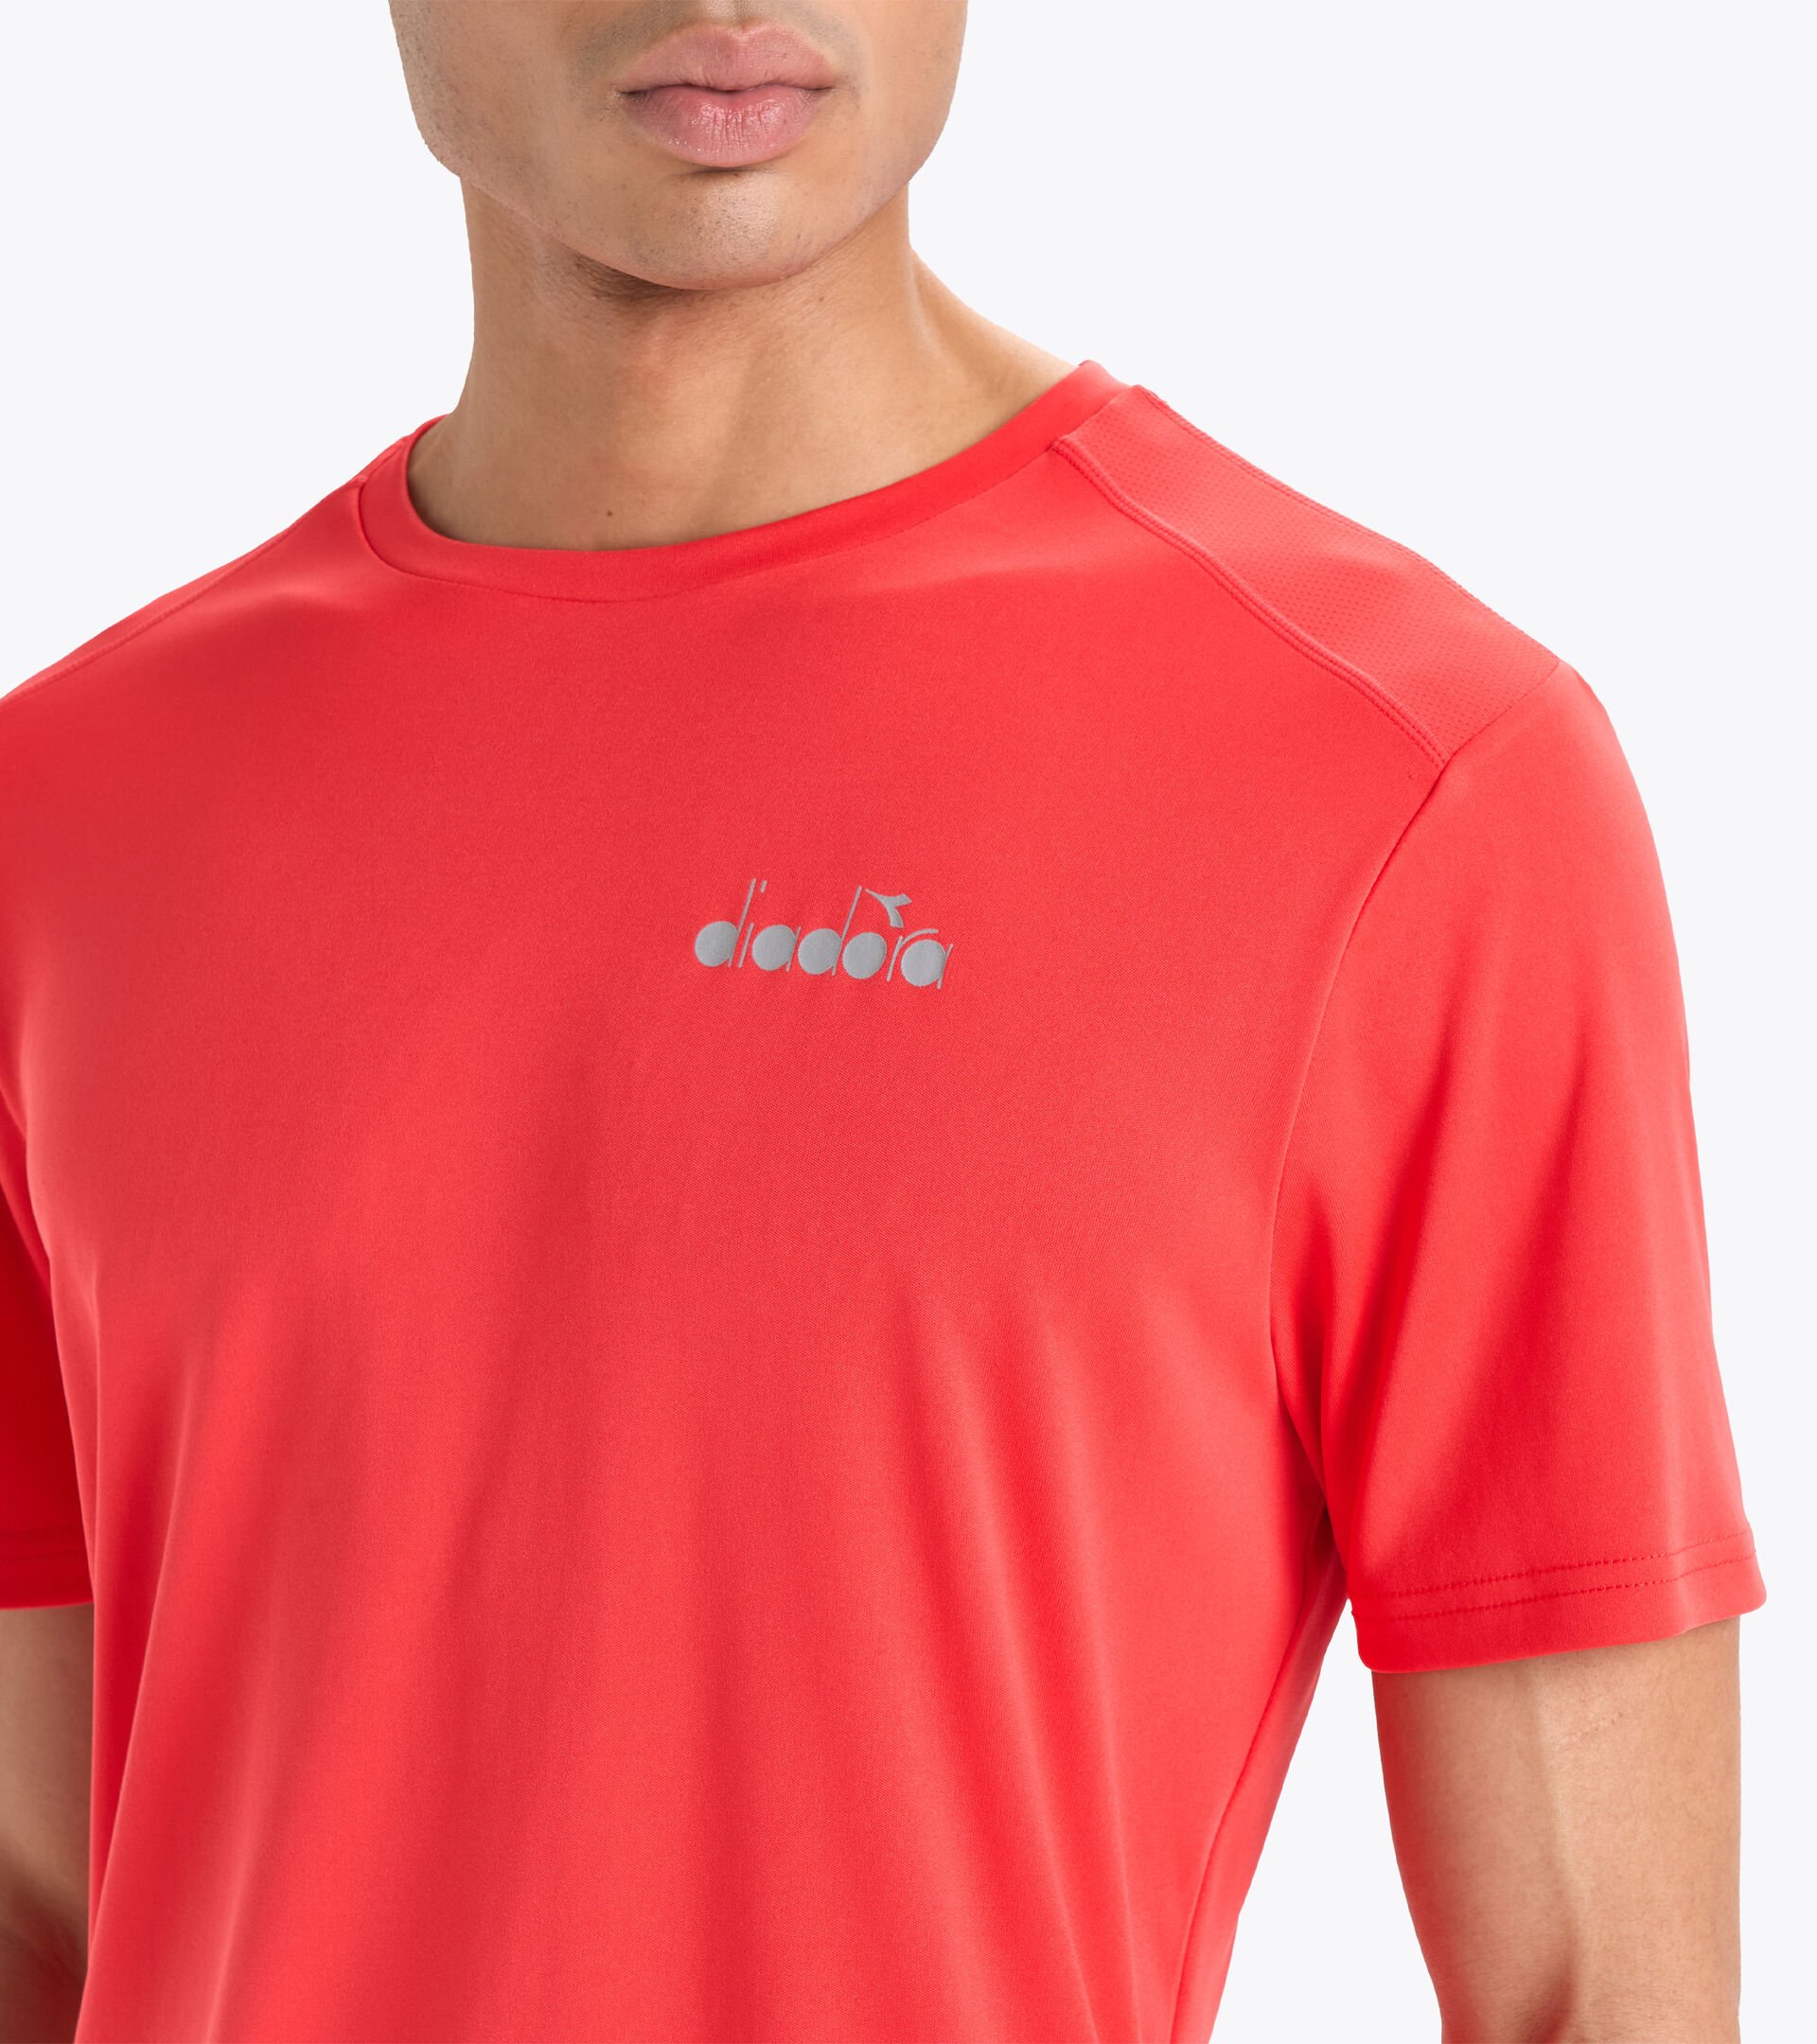 T-shirt de running - Homme SS T-SHIRT RUN ROUGE ARDENT - Diadora